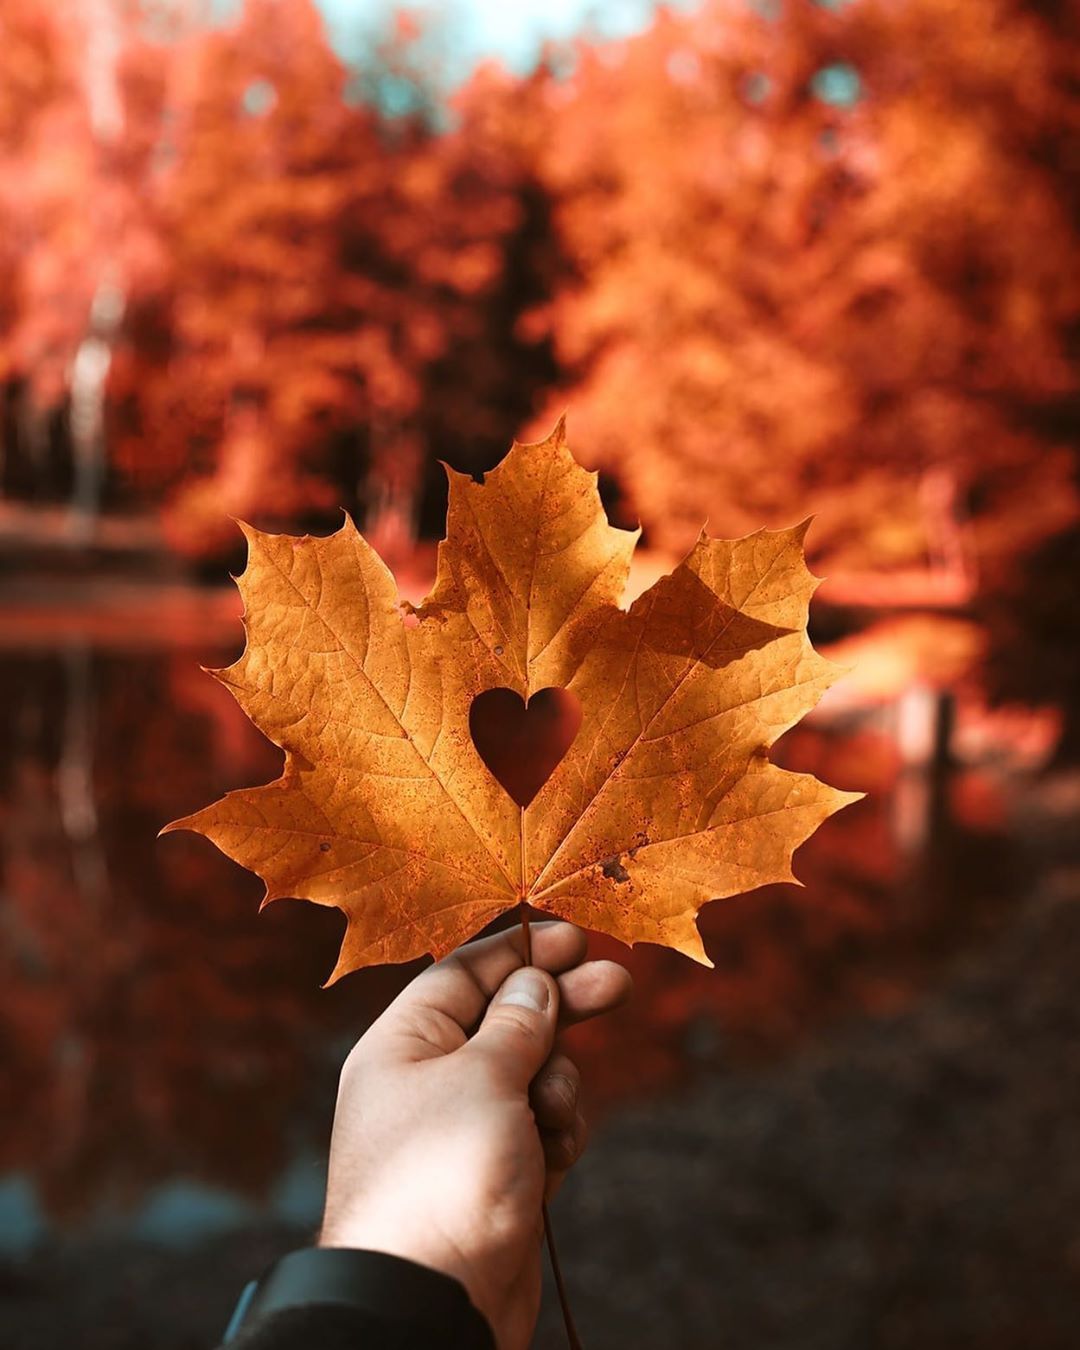 Aυƚυɱɳαʅ on Instagram: “Autumn has my heart